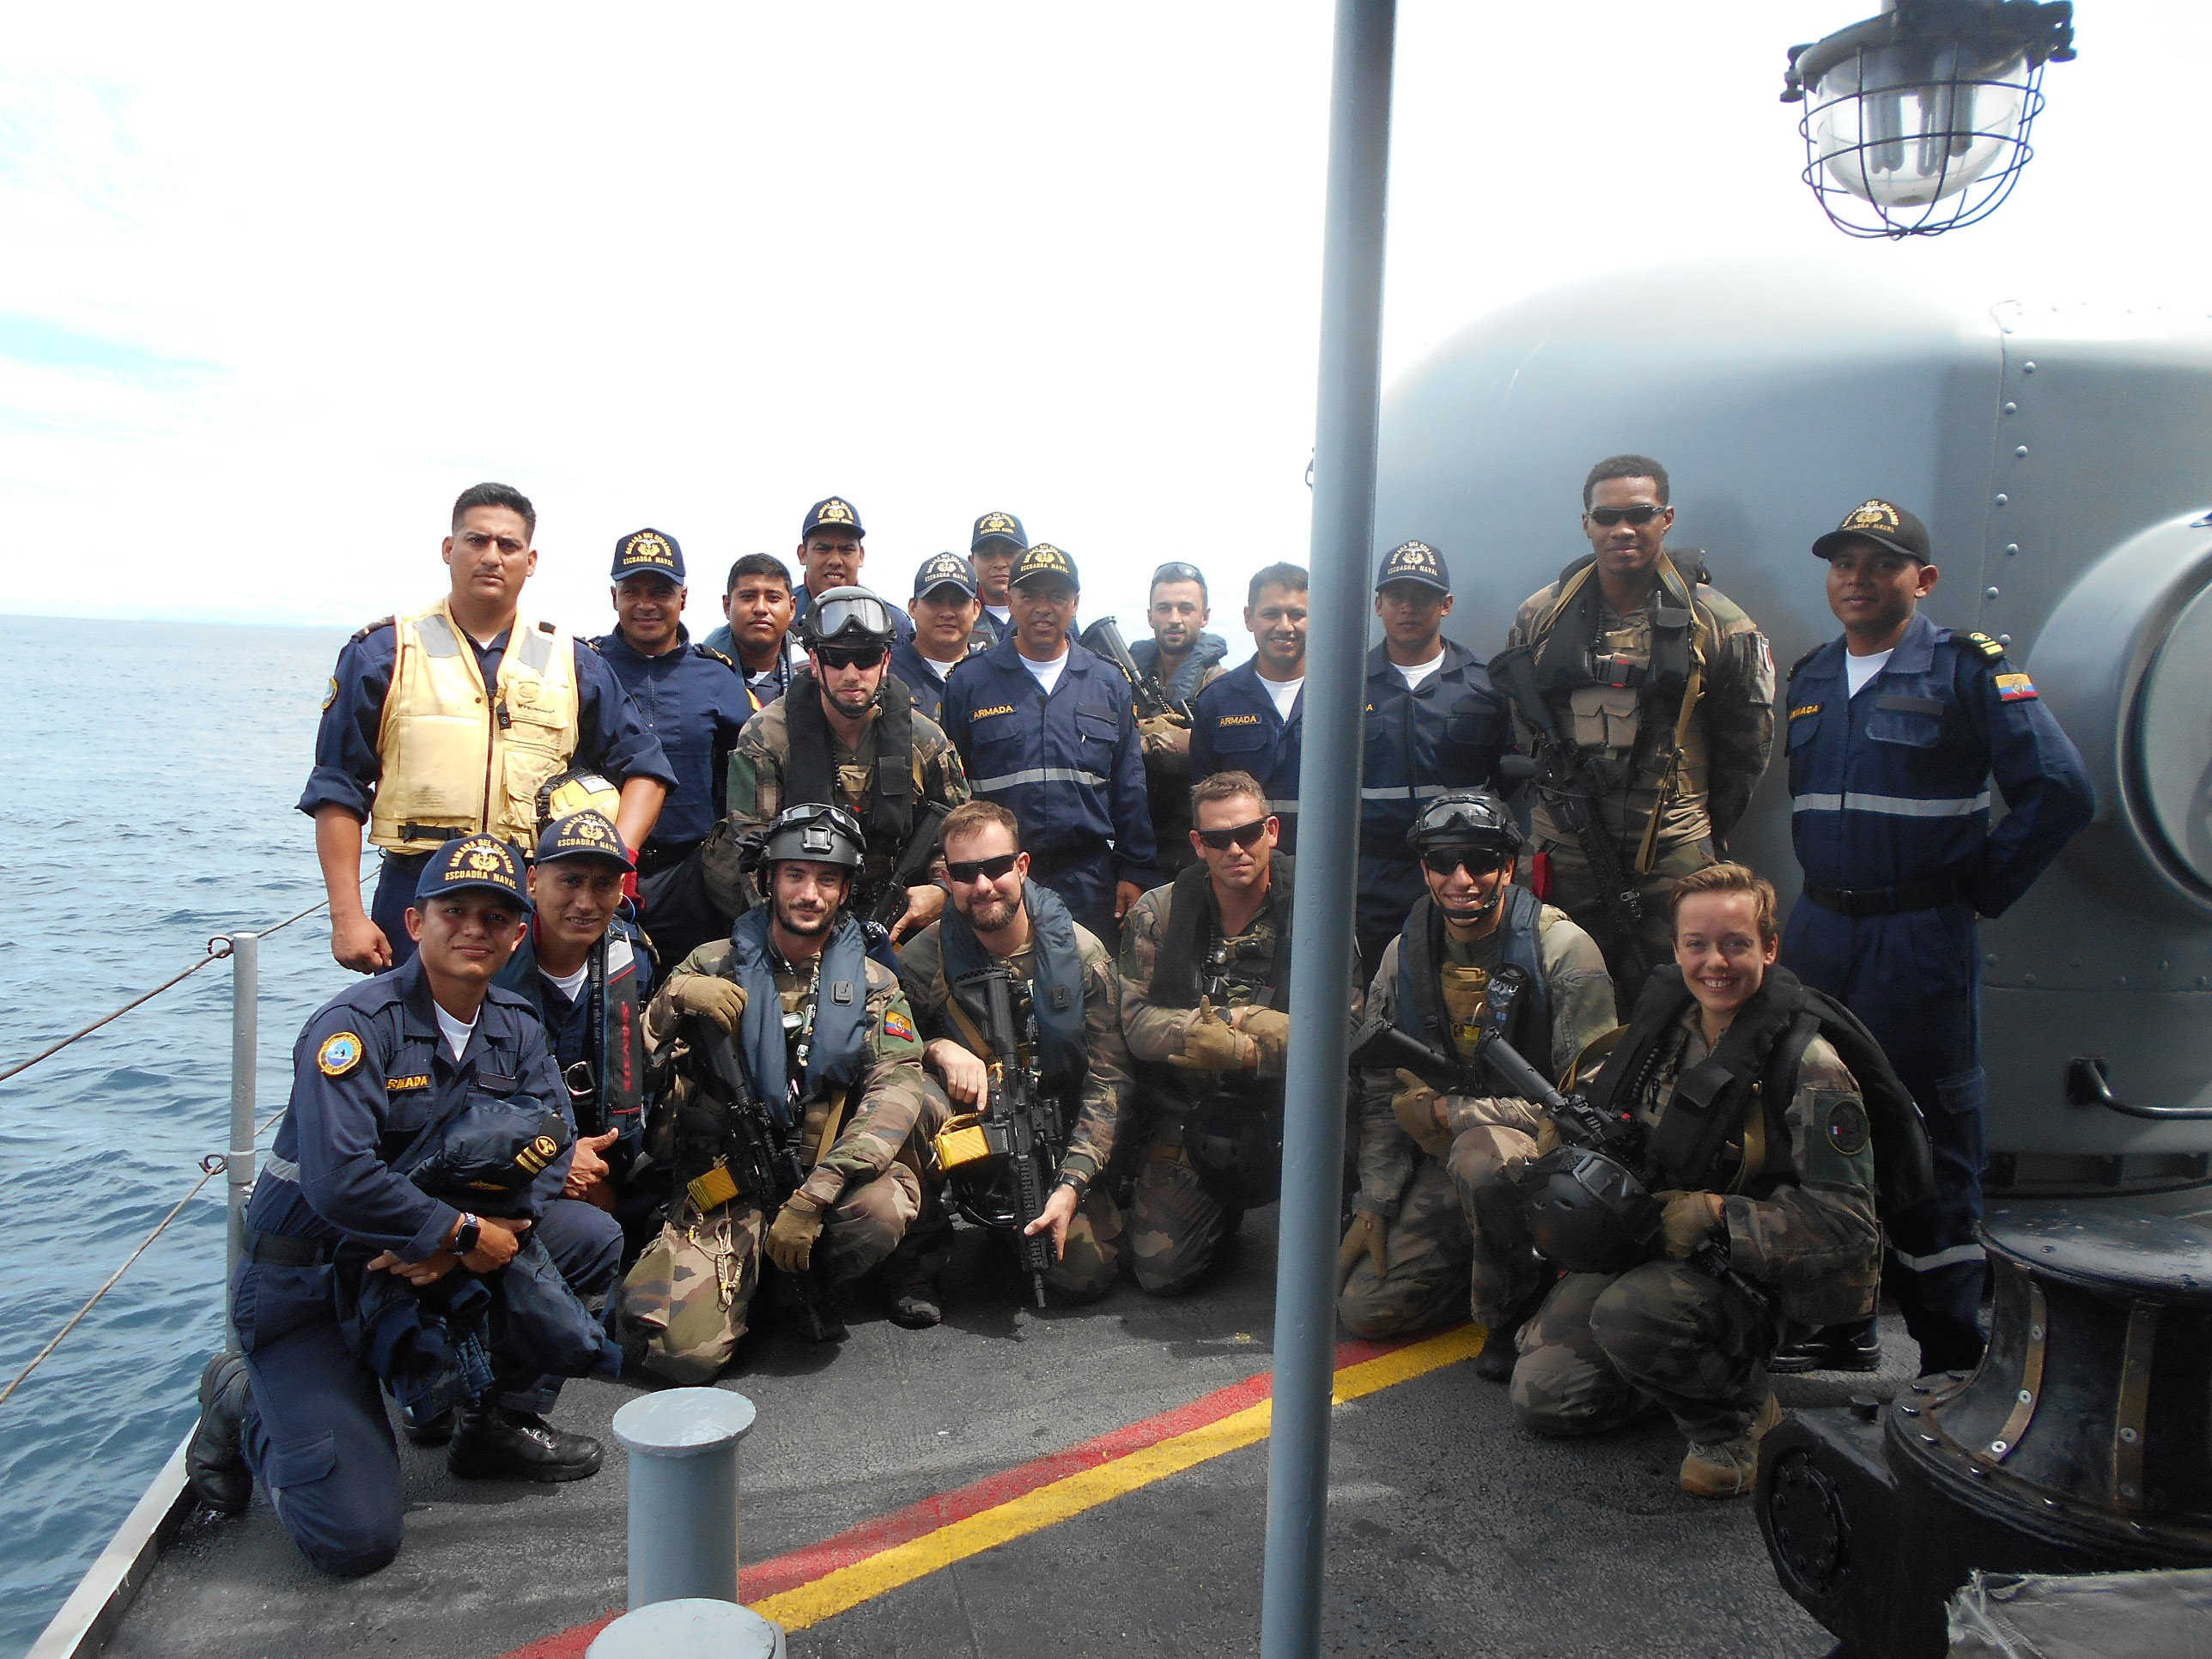  Amérique du Sud – Entrainement PASSION 23, entre la FS Germinal et les marines colombienne et équatorienne dans le Pacifique